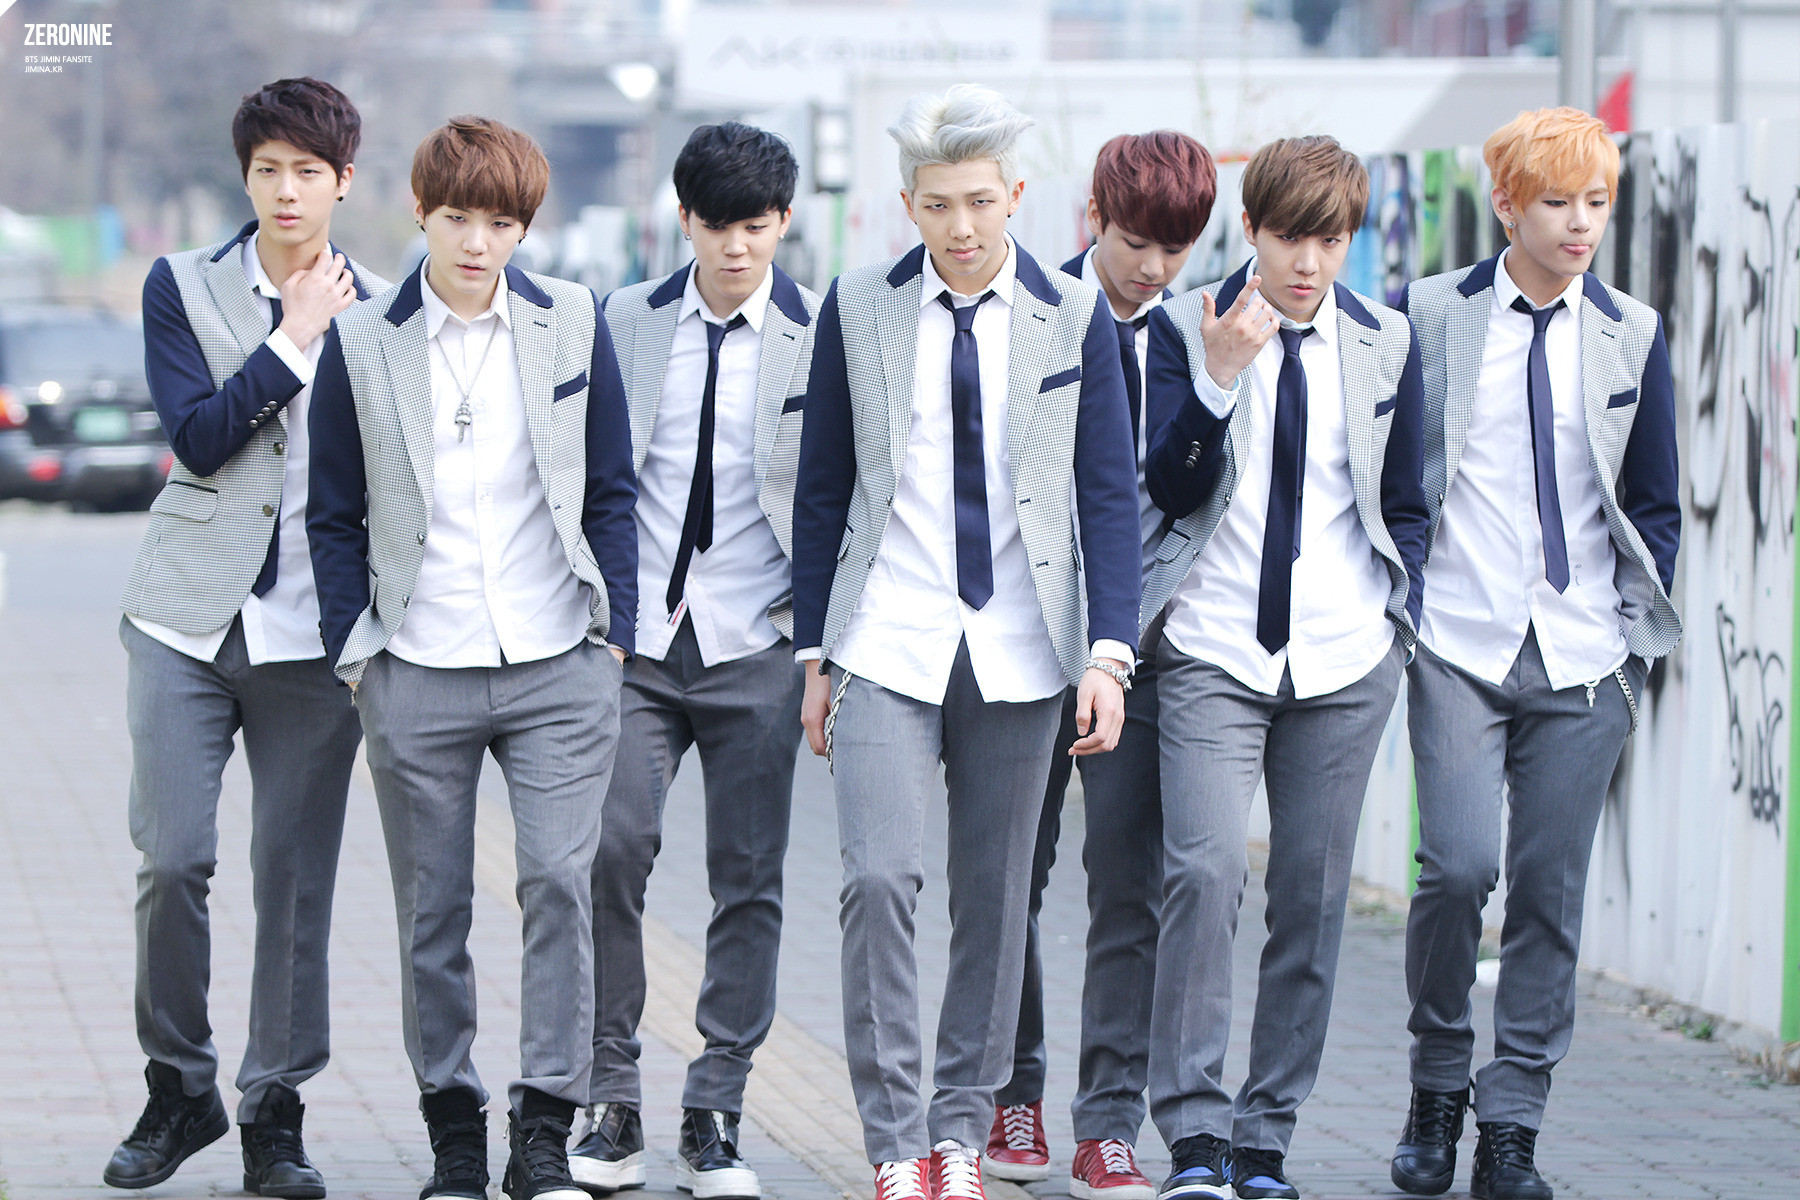 school uniform, kpop school uniform, school uniform kpop, school uniform concept, kpop school uniform concept, bts school uniform